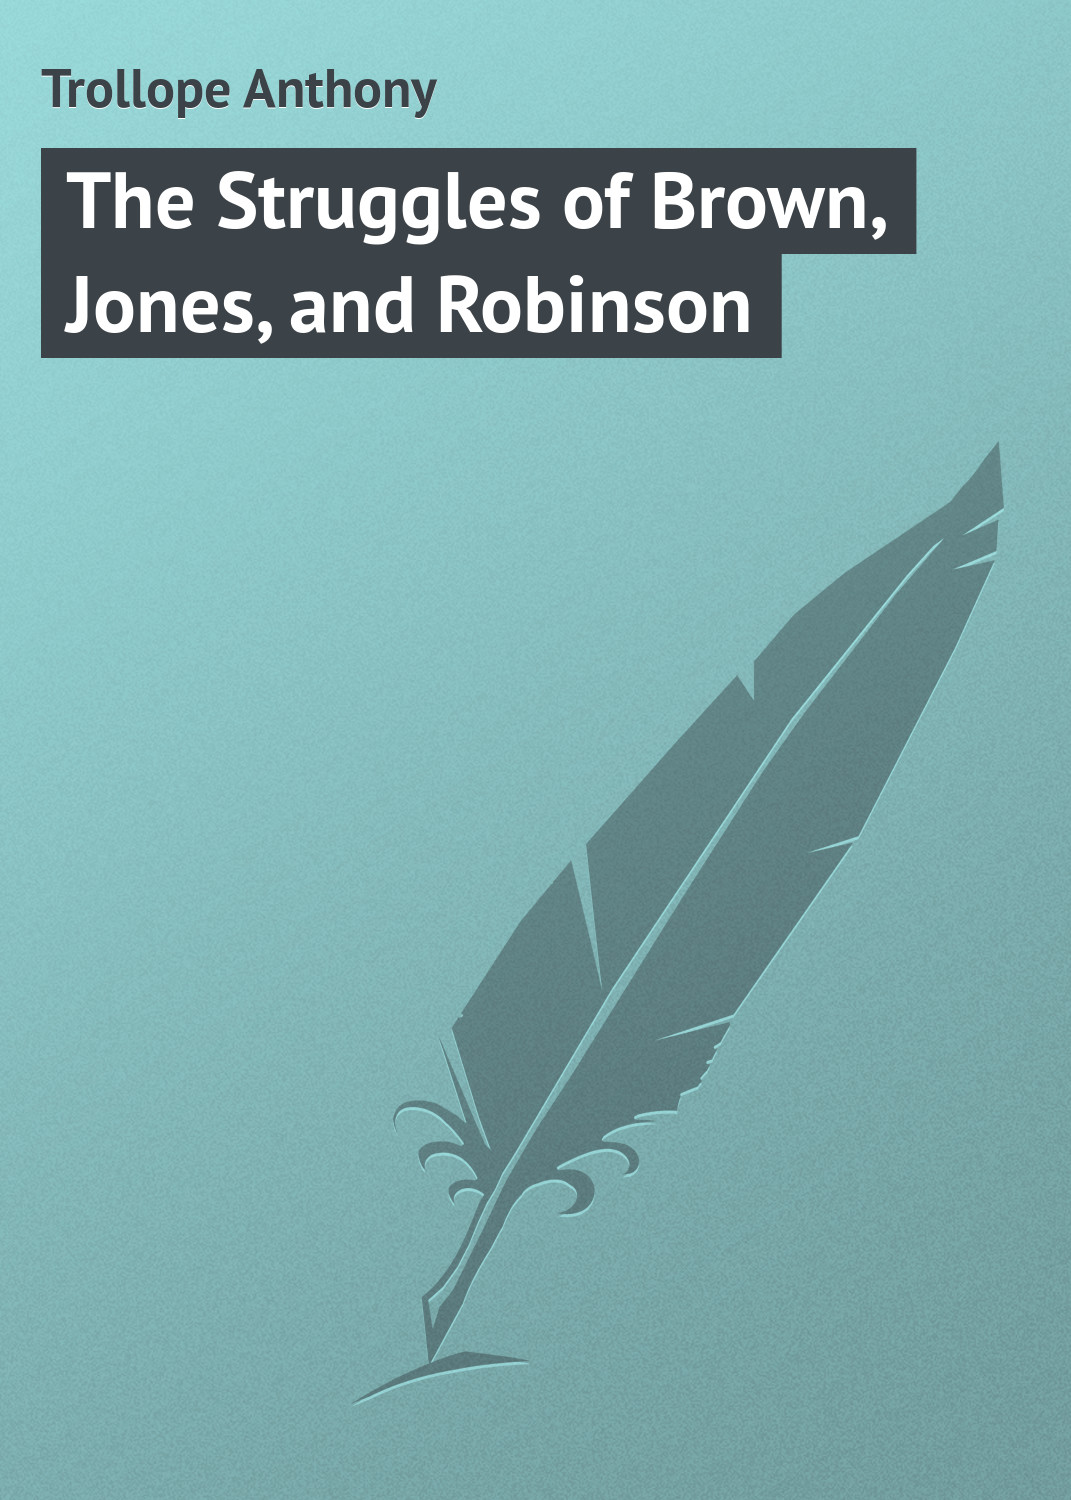 Книга The Struggles of Brown, Jones, and Robinson из серии , созданная Anthony Trollope, может относится к жанру Зарубежная классика, Юмористическая проза, Иностранные языки. Стоимость электронной книги The Struggles of Brown, Jones, and Robinson с идентификатором 23144451 составляет 5.99 руб.